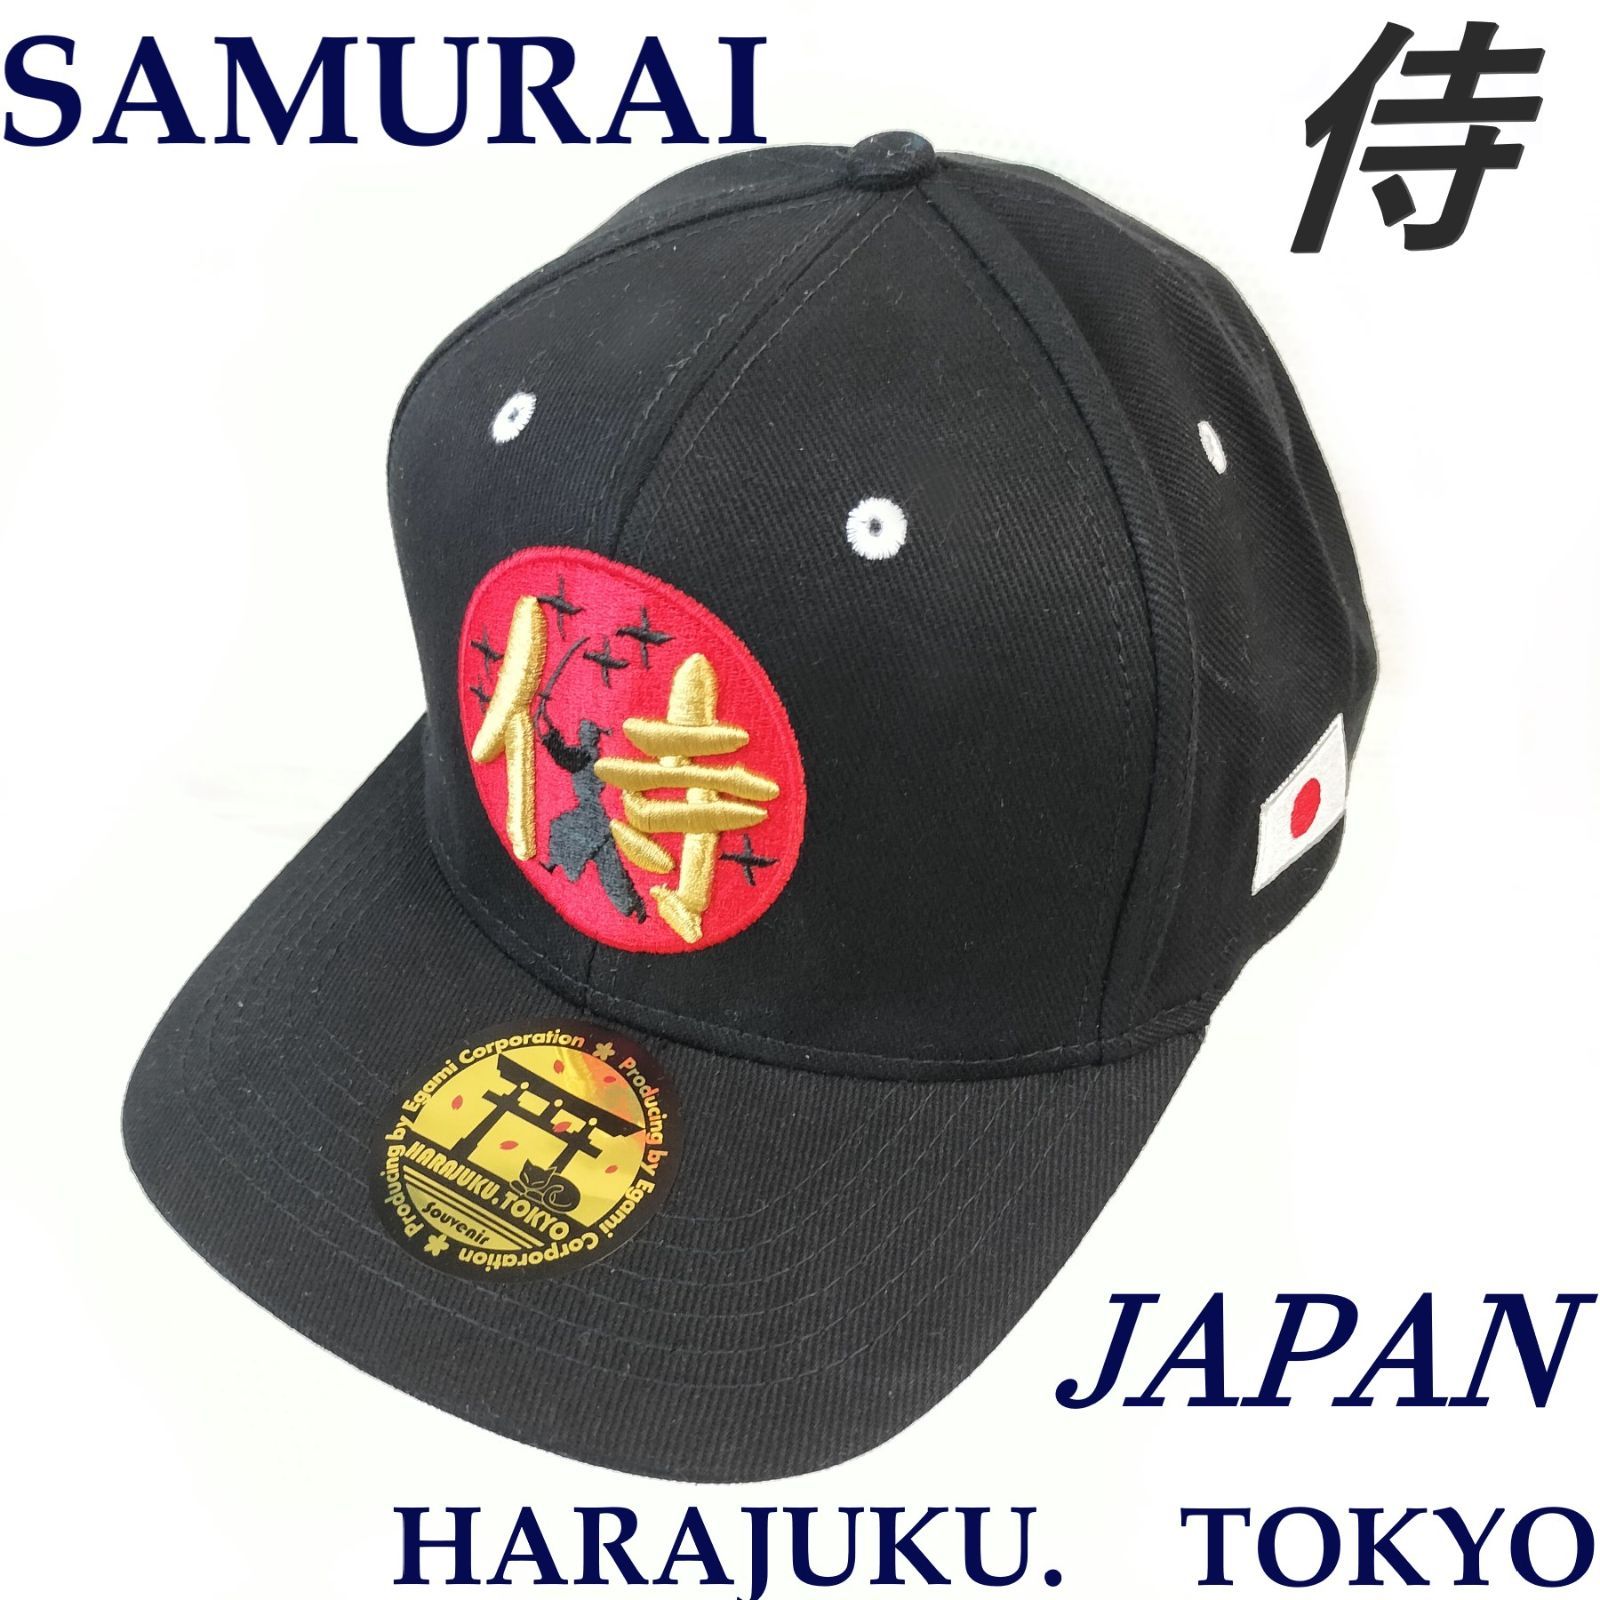 新品☆侍/SAMURAI キャップ/野球帽☆JAPAN / HARAJUKU.TOKYO / 日の丸 